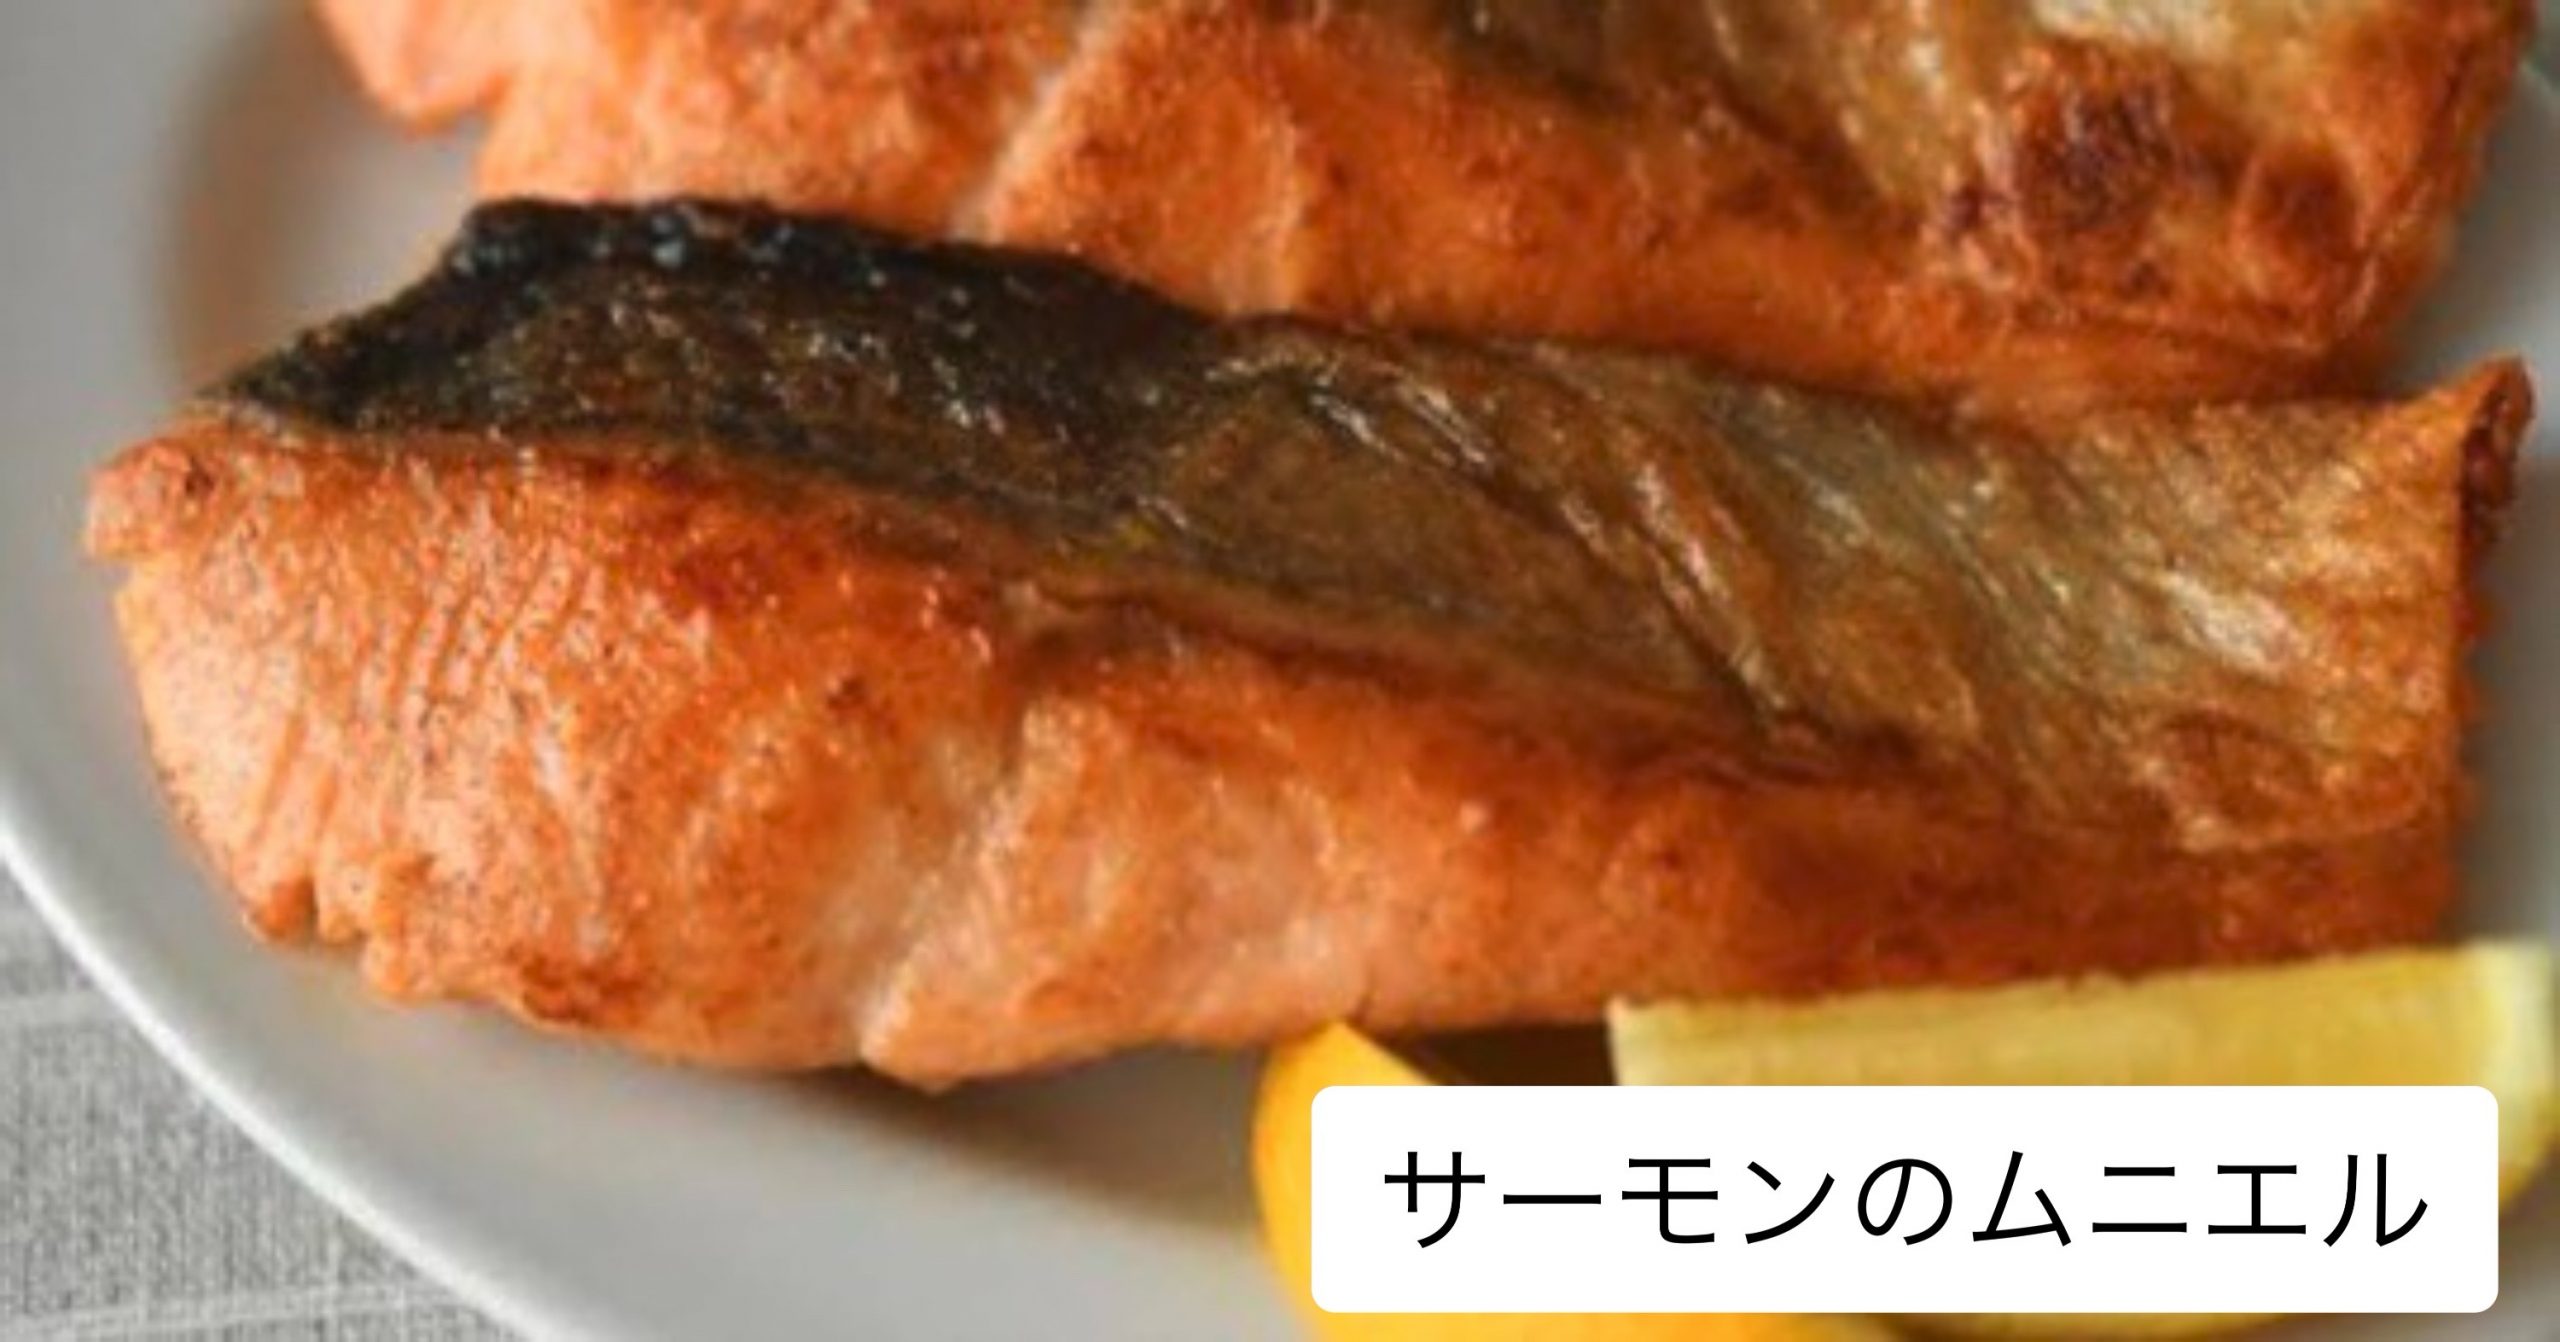 サクラマスのムニエル 海の恵み 食の底力 Japan 公式レシピサイト